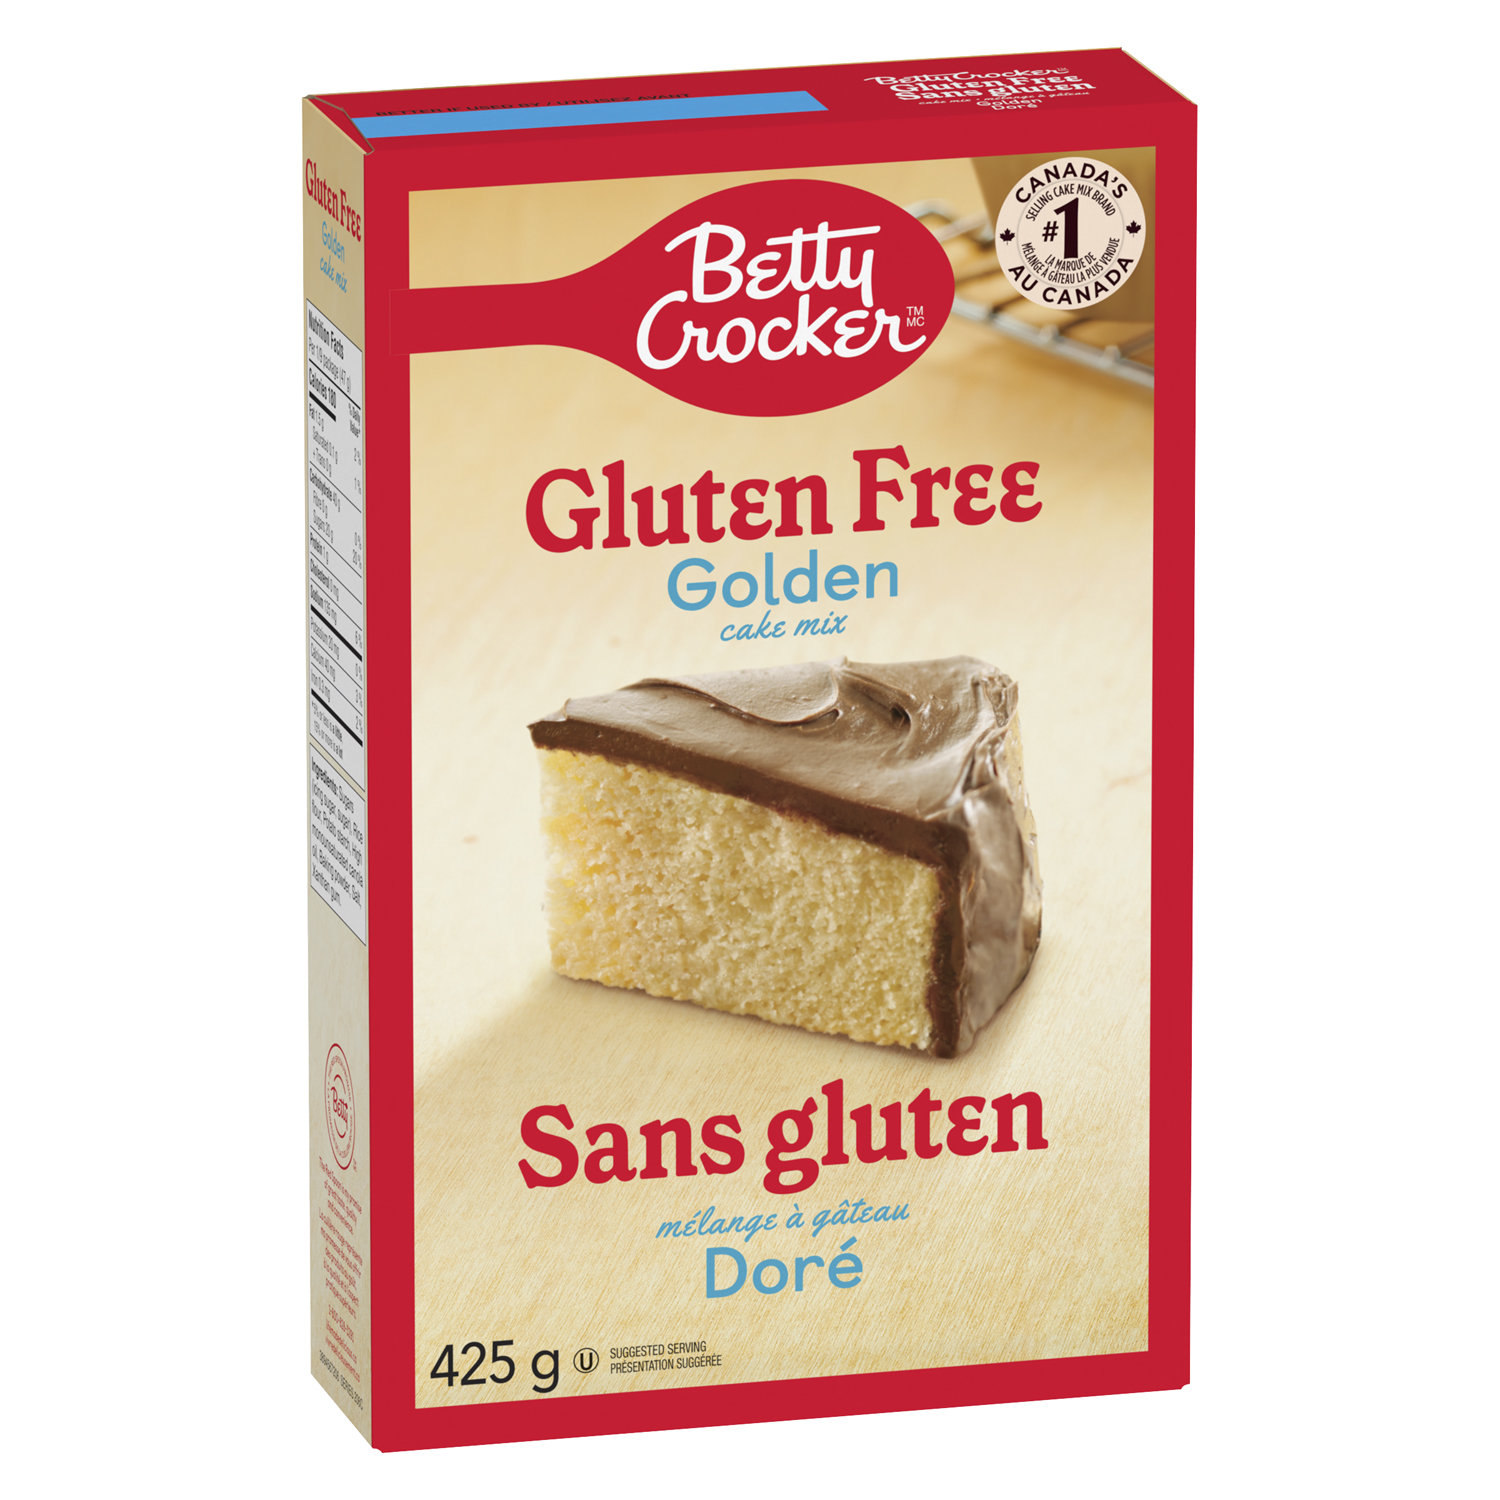 Betty - Gluten Free Golden Mix